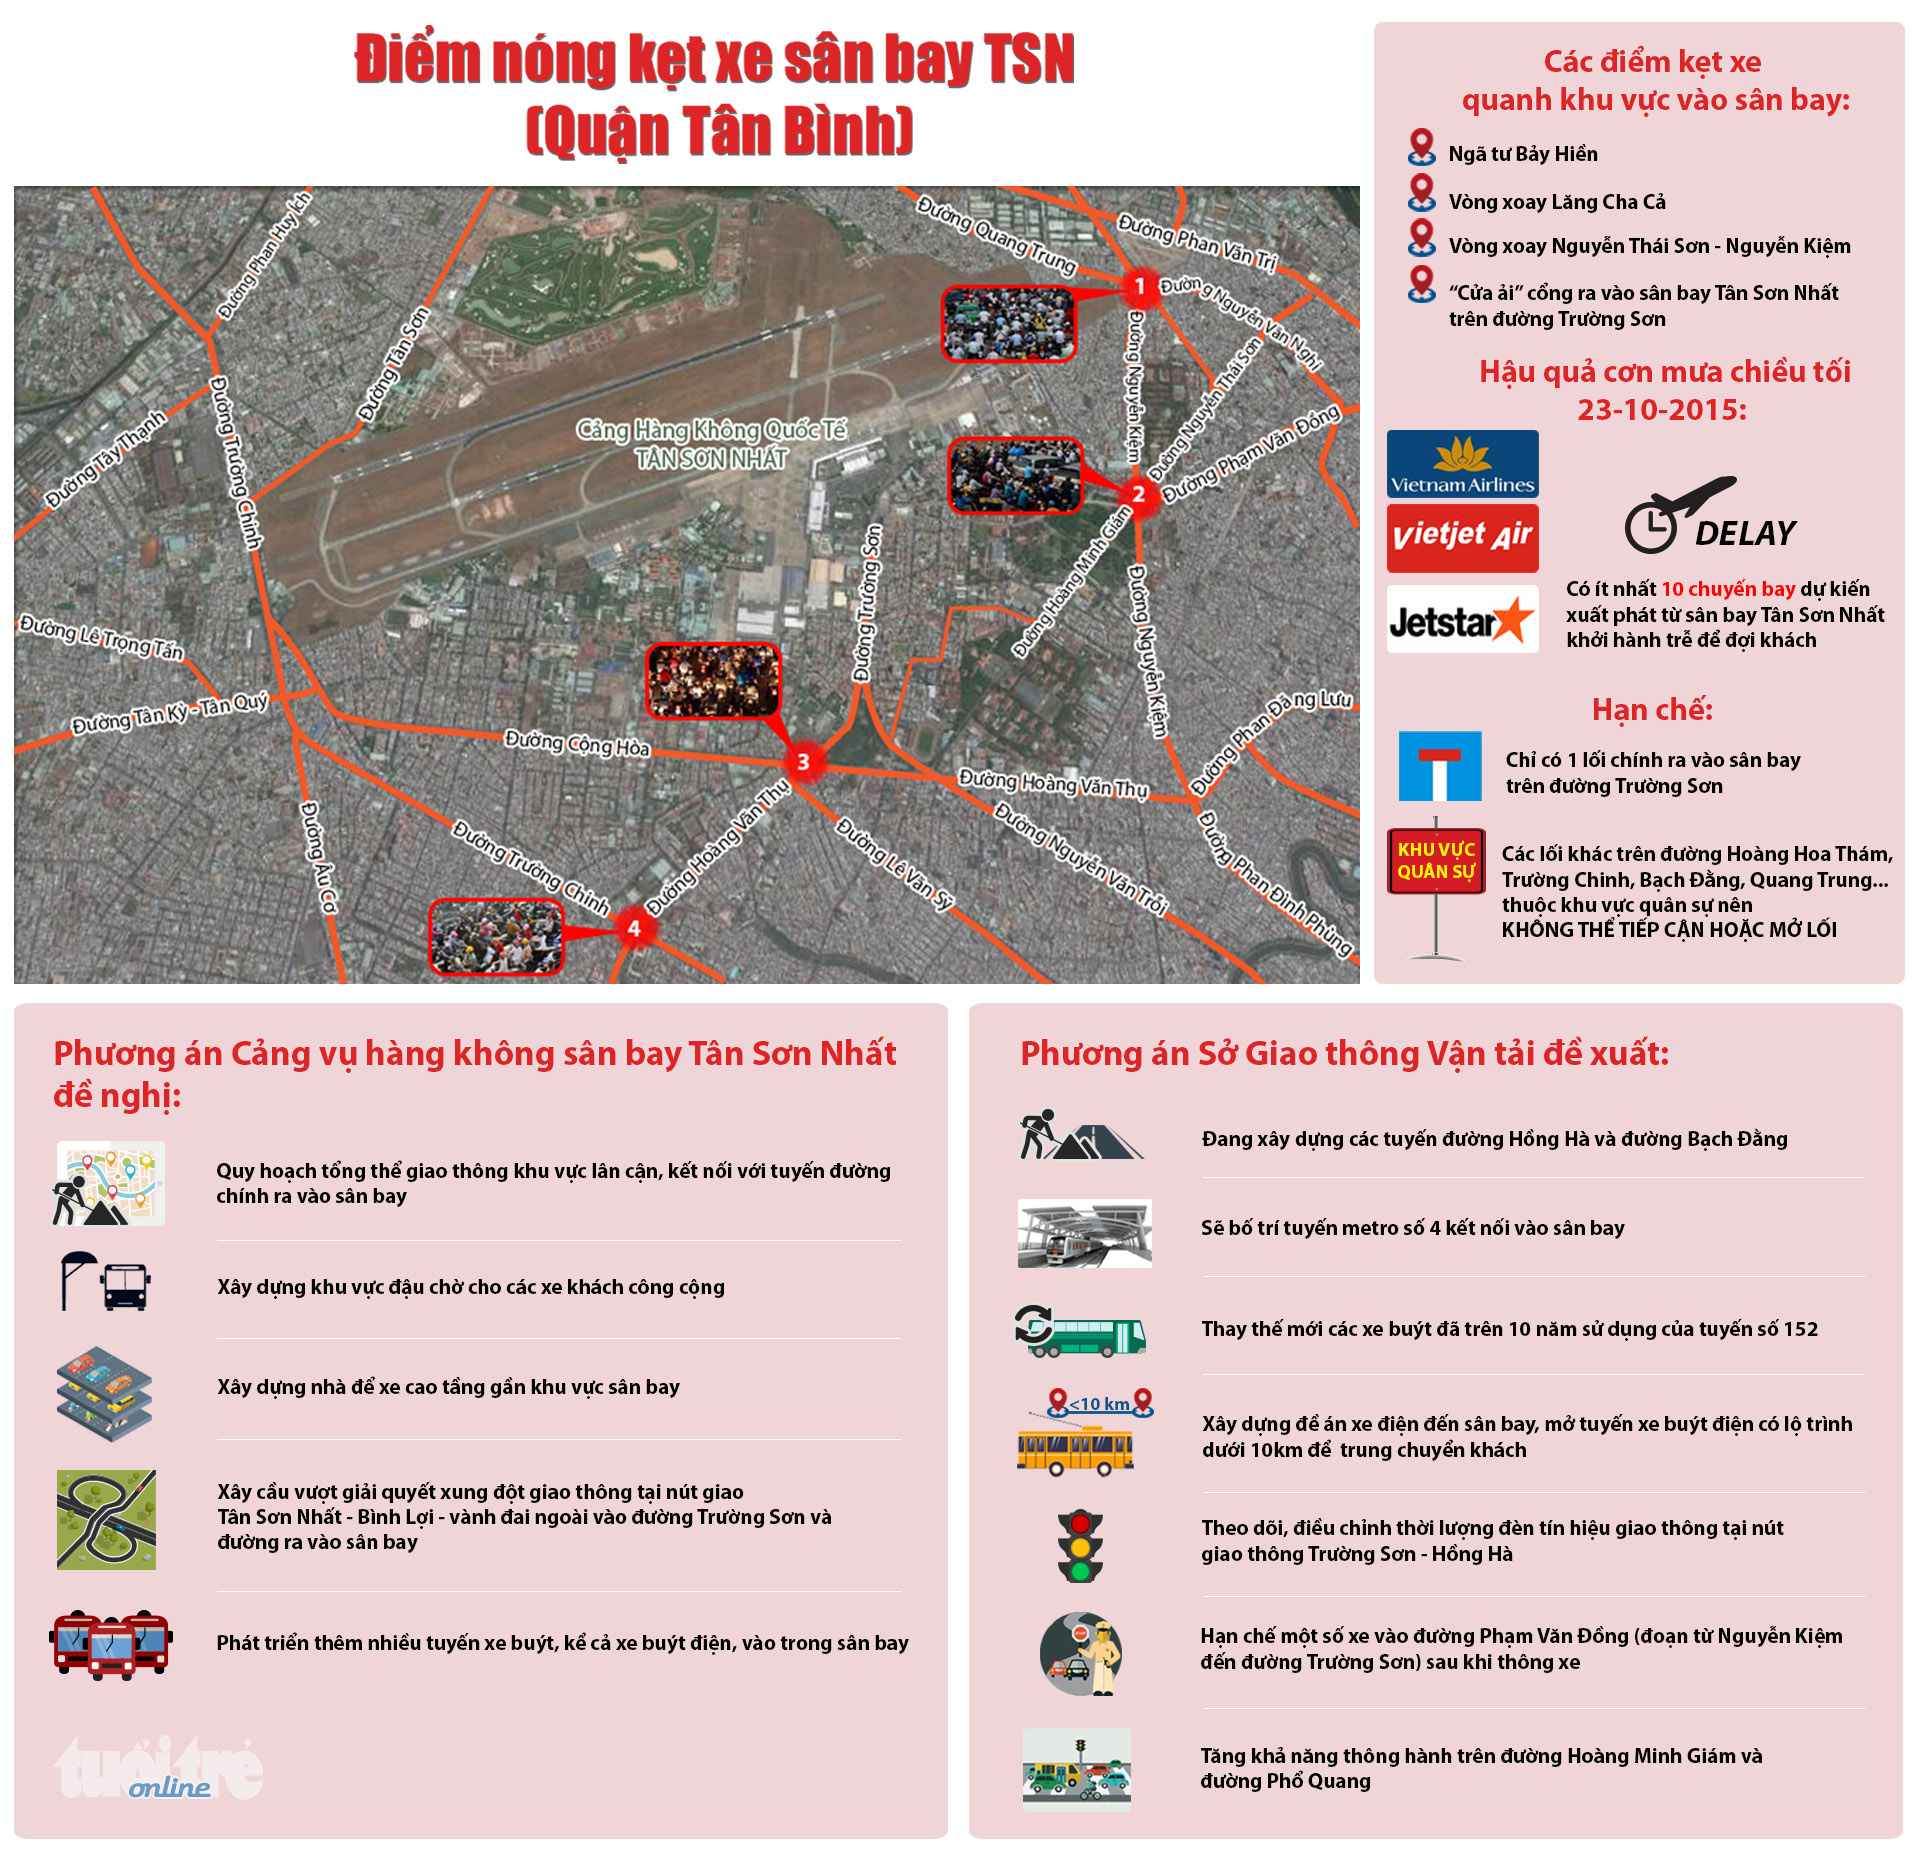 Điểm nóng kẹt xe của ngõ sân bay Tân Sơn Nhất (quận Tân Bình): thực trạng và giải pháp đề xuất - Đồ họa: Việt Thái - T.Thiên